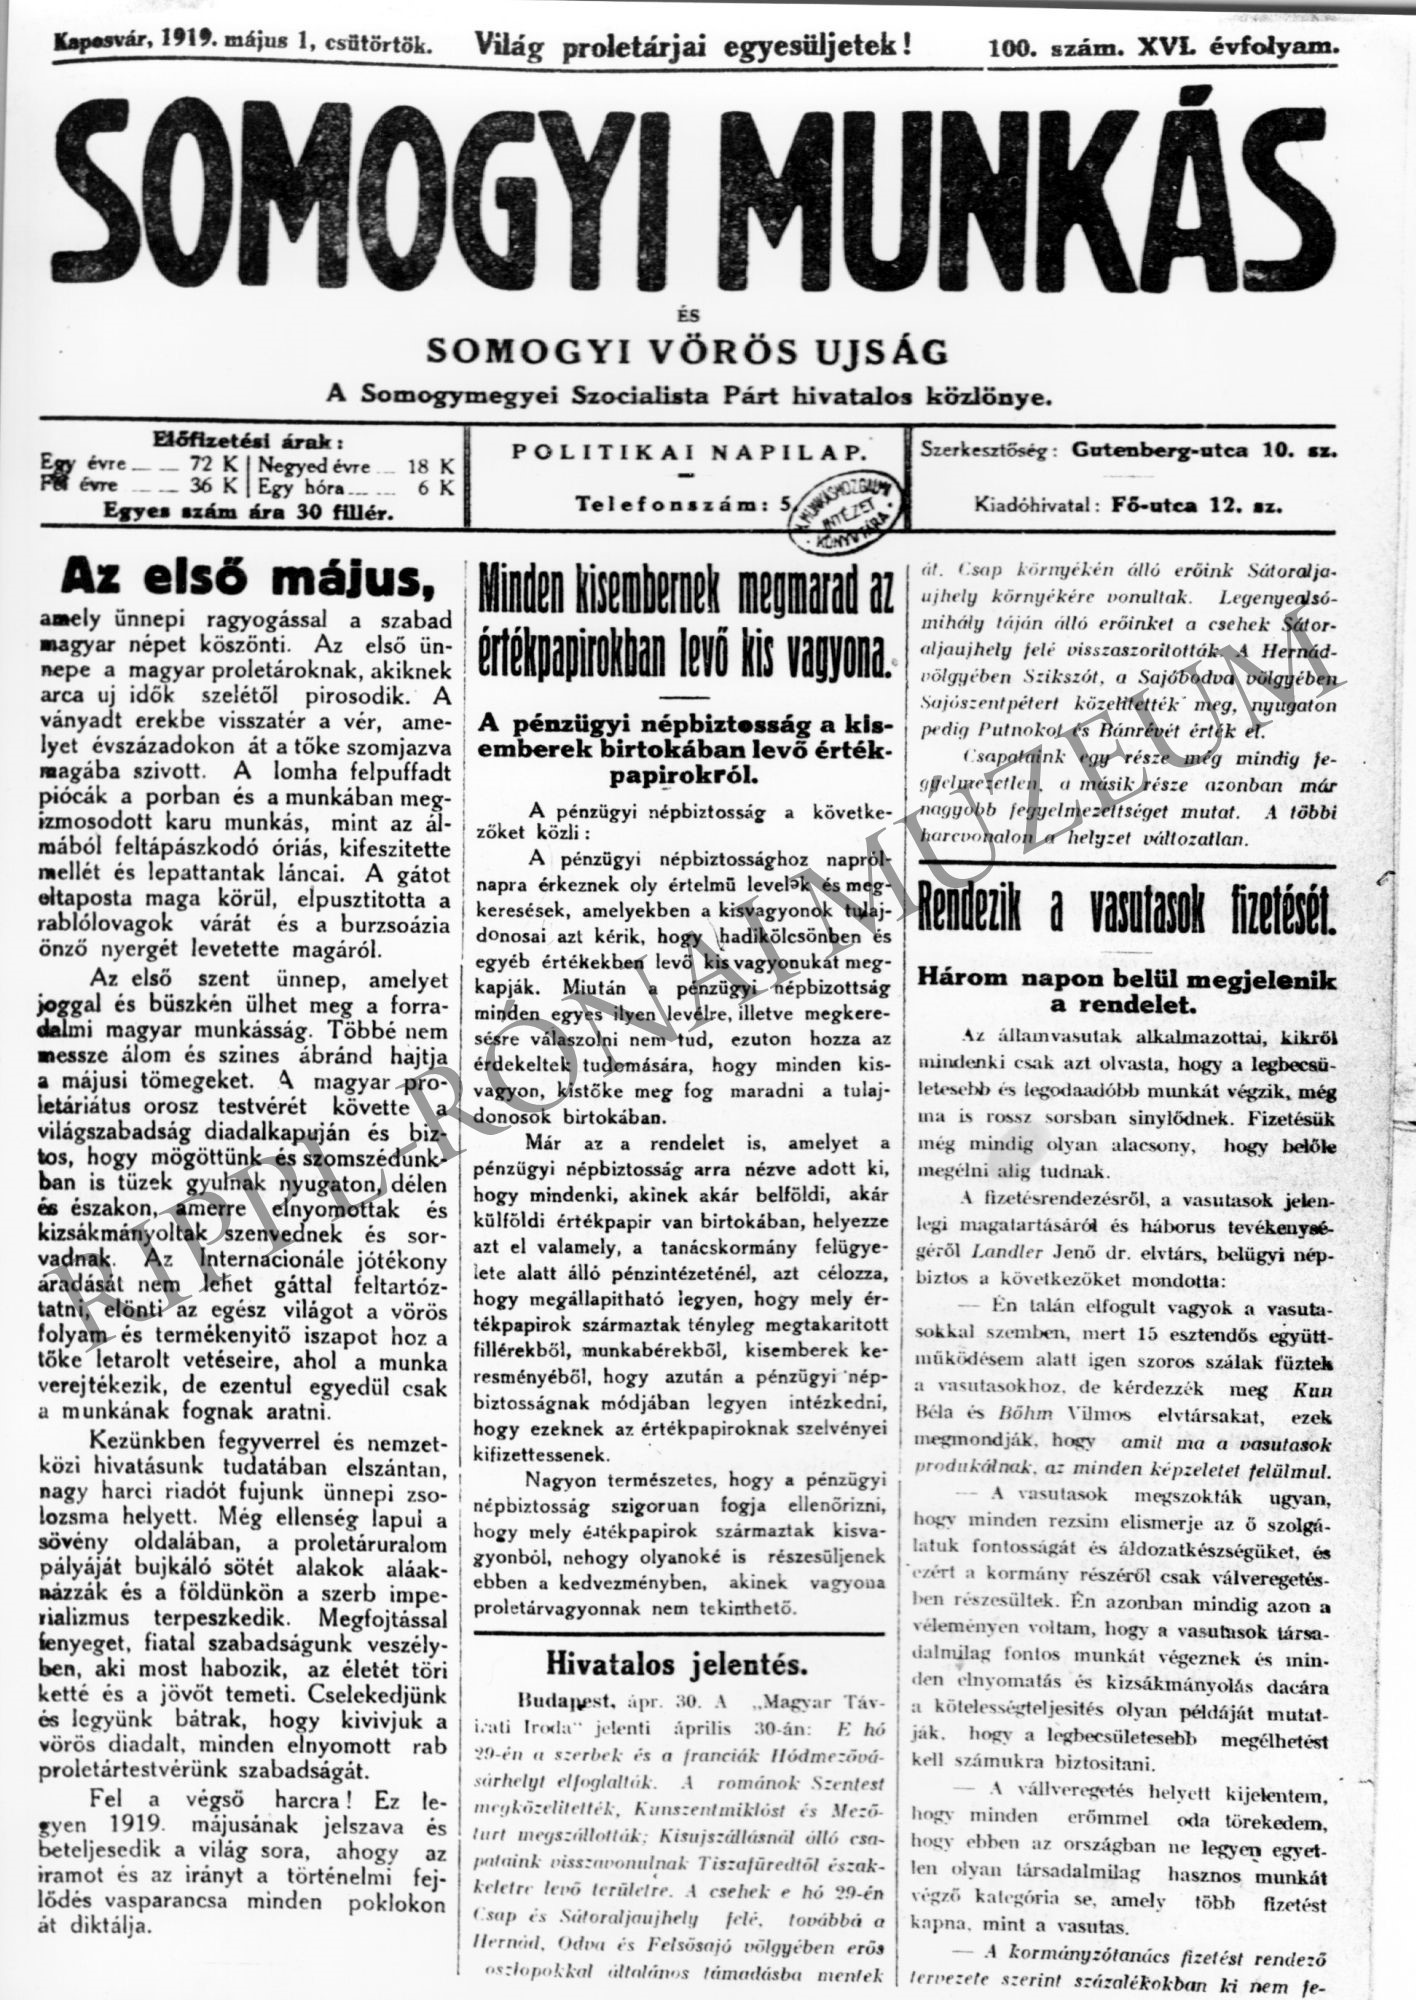 Somogyi Munkás és Somogyi Vörös Ujság. 1919. május 1.címlapja (Rippl-Rónai Múzeum CC BY-NC-SA)